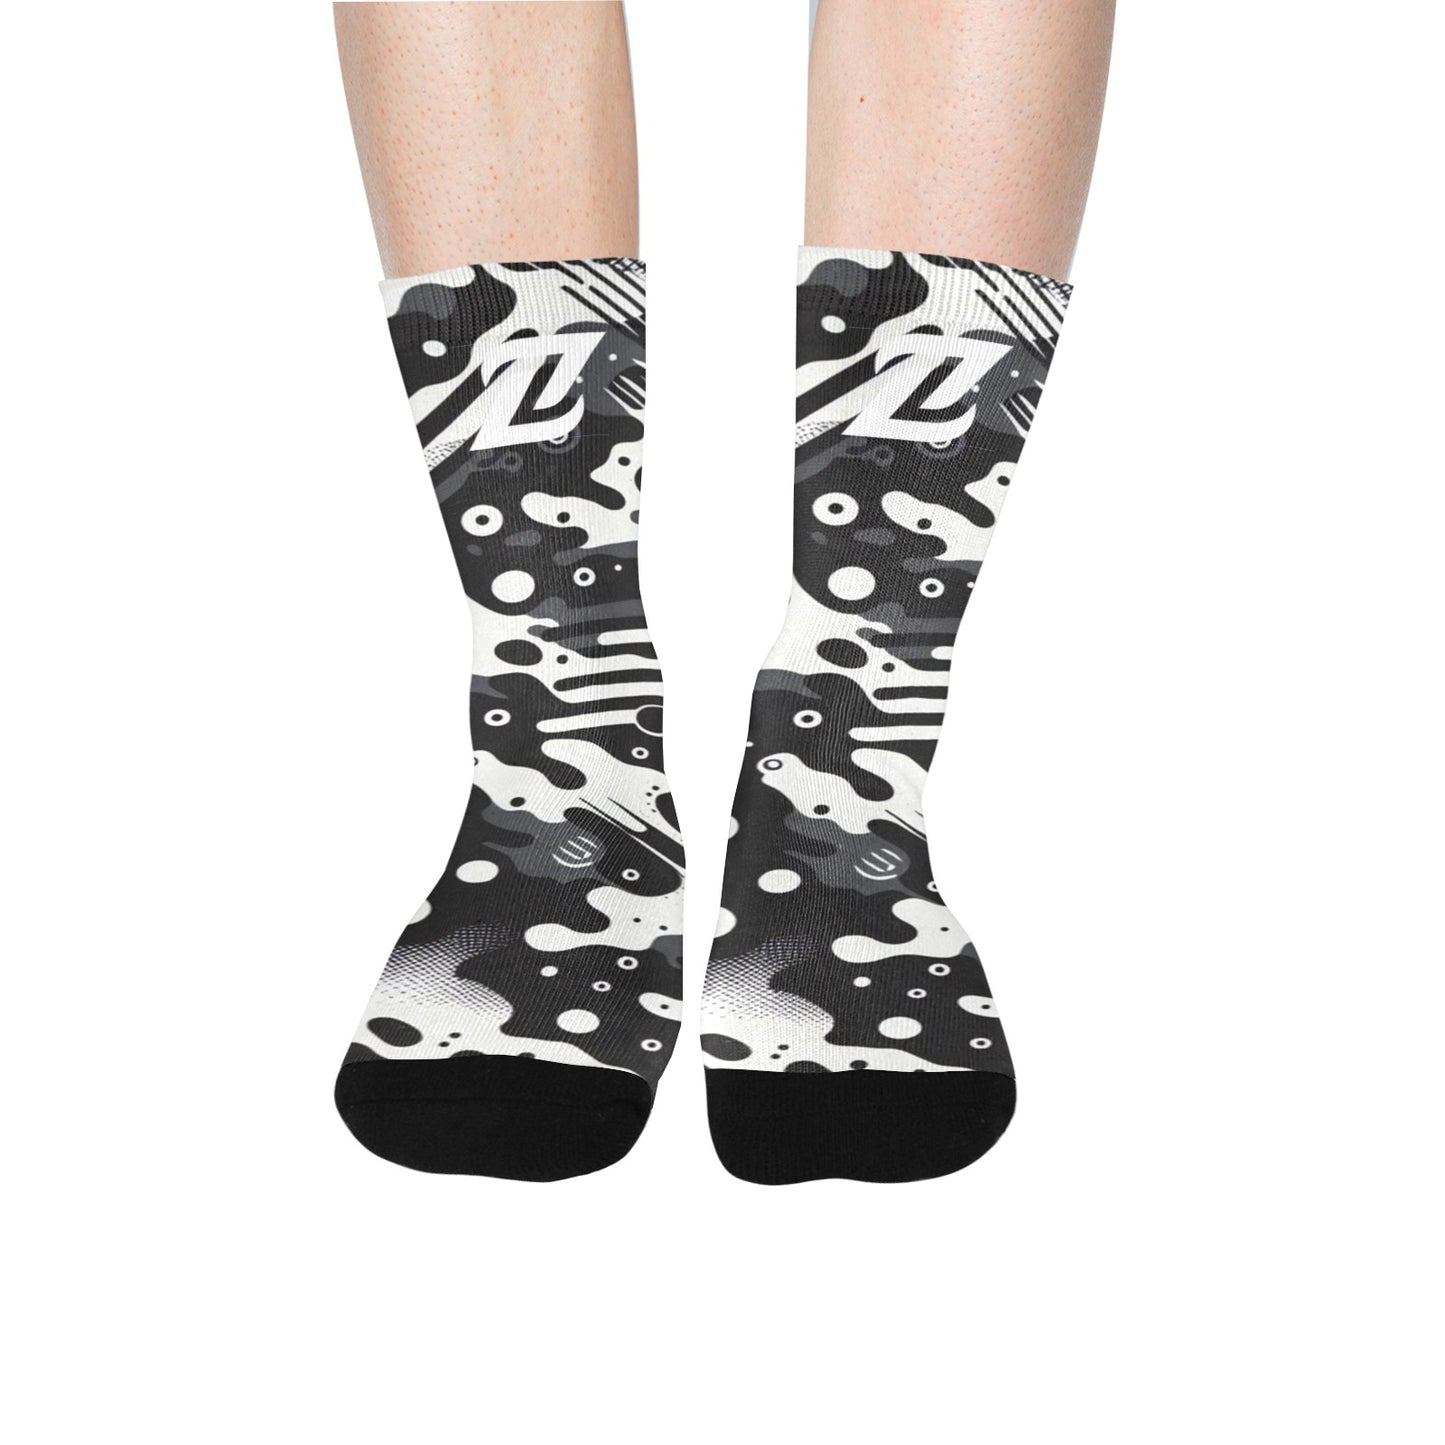 Zen Socks - B&W Camo